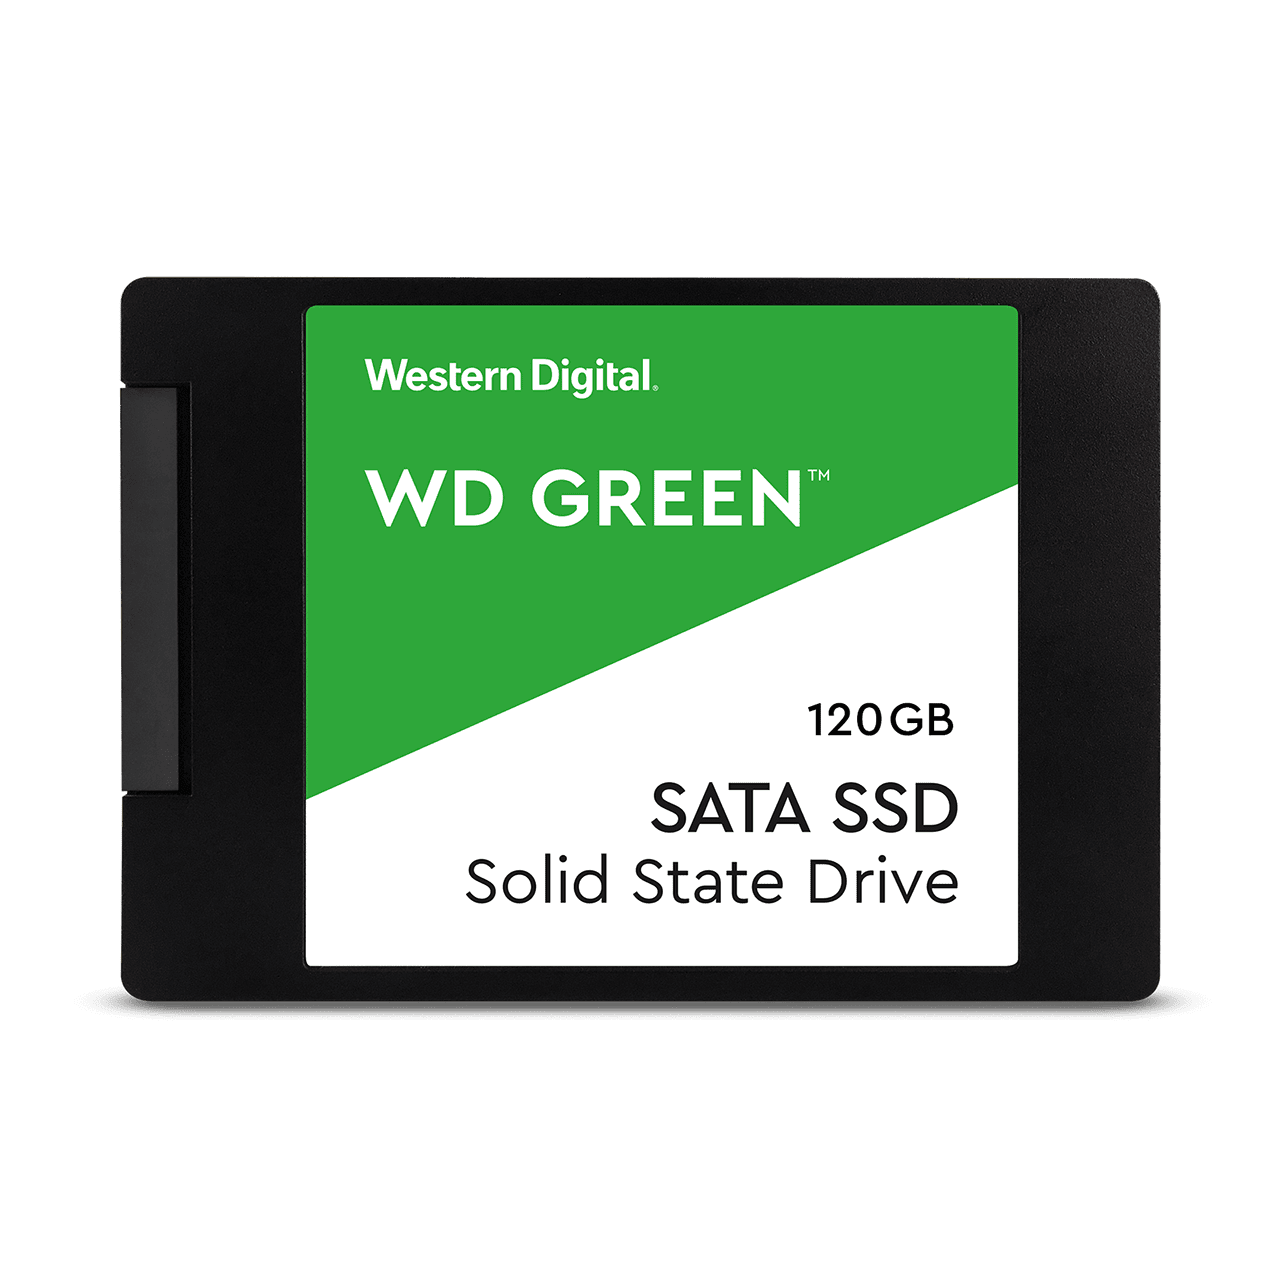 SSD 120 GB Teknik Özellikleri Nelerdir?